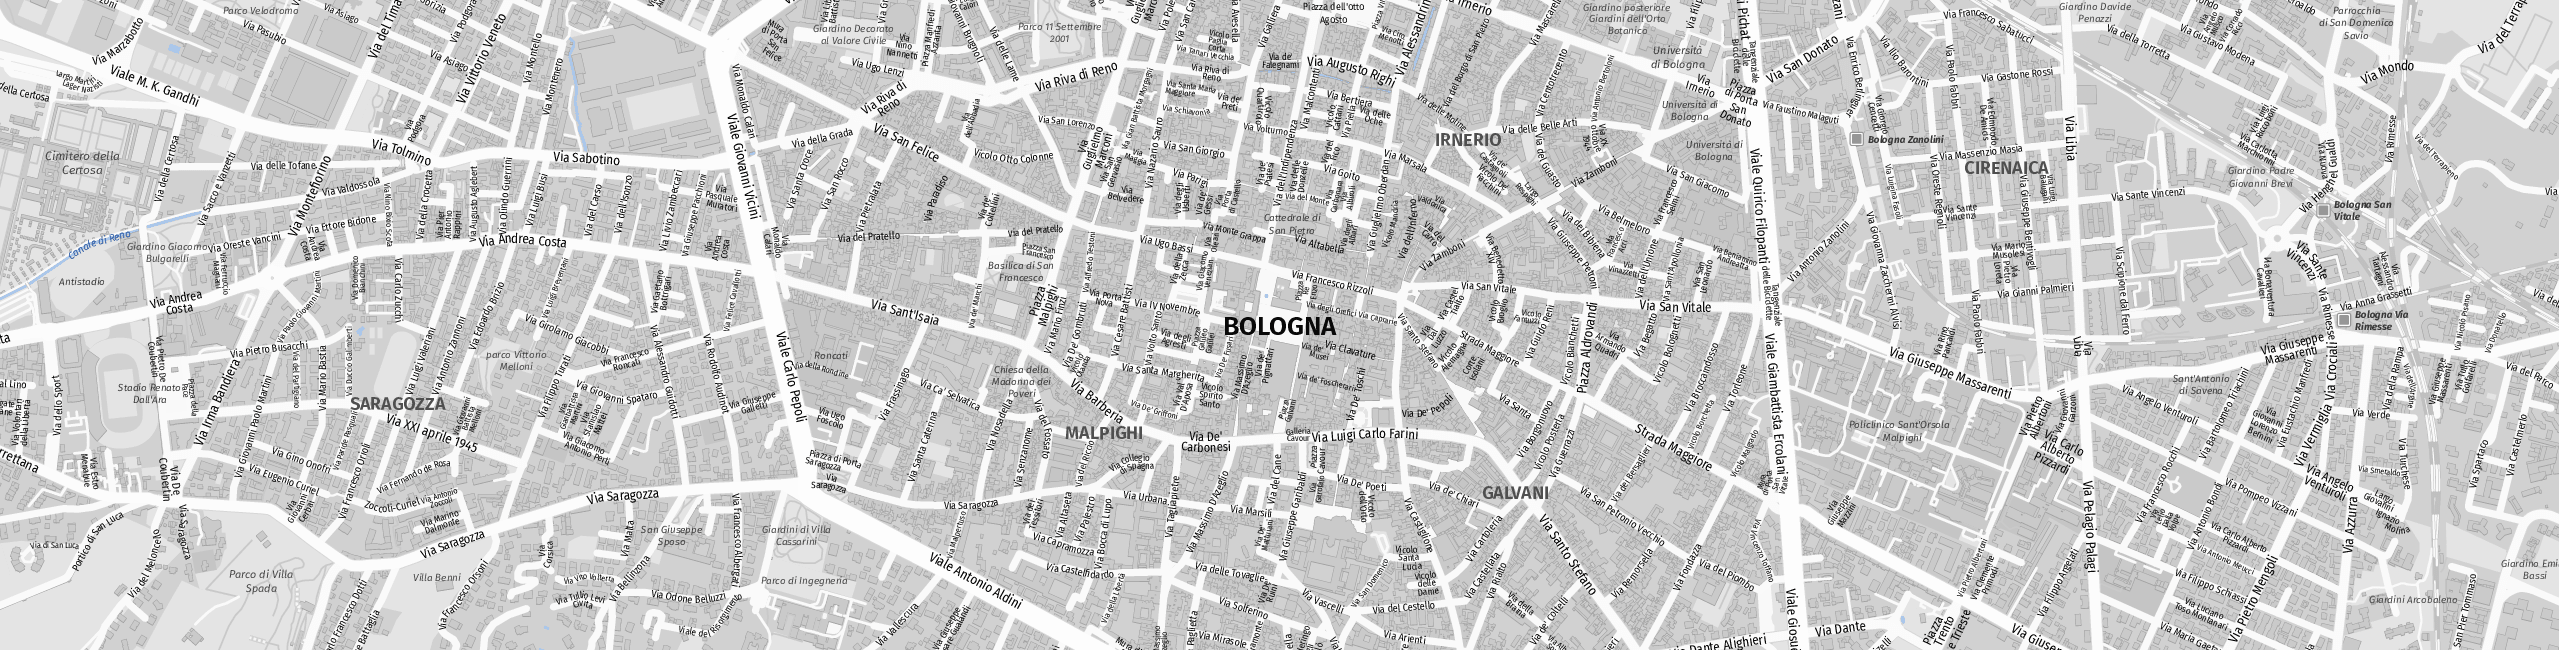 Stadtplan Bologna zum Downloaden.